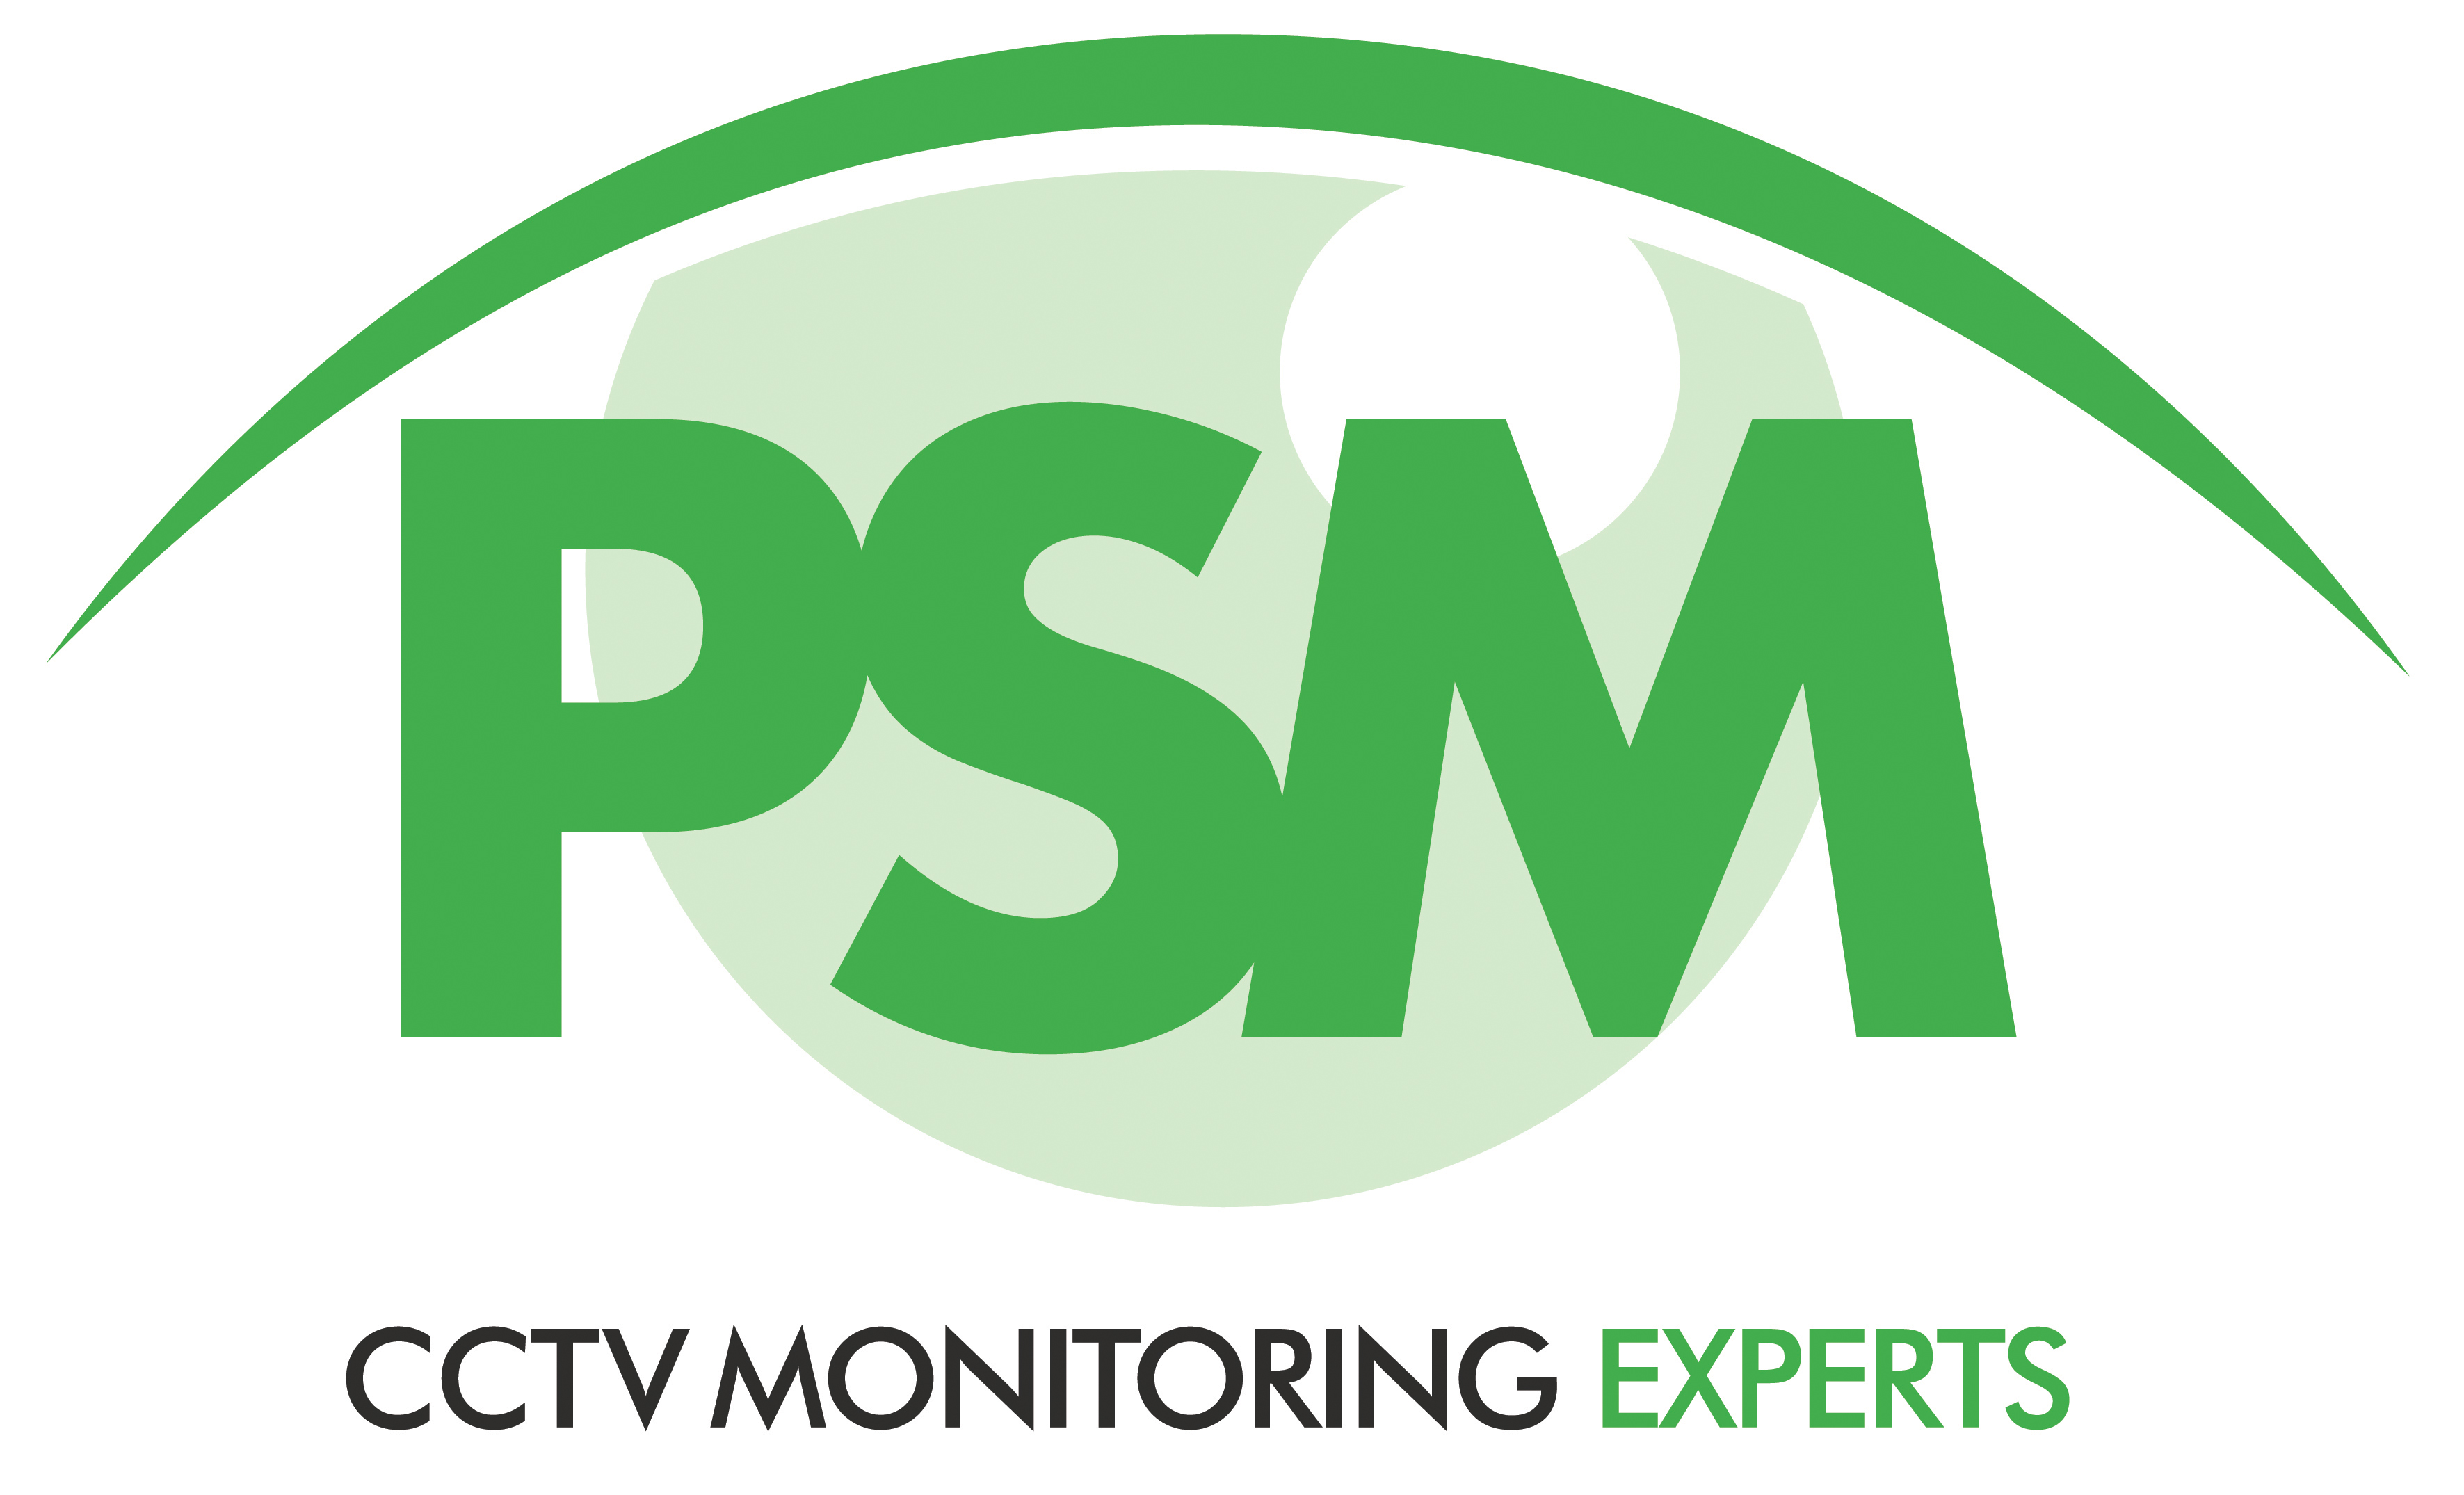 Professional Surveillance Management (PSM) Limited